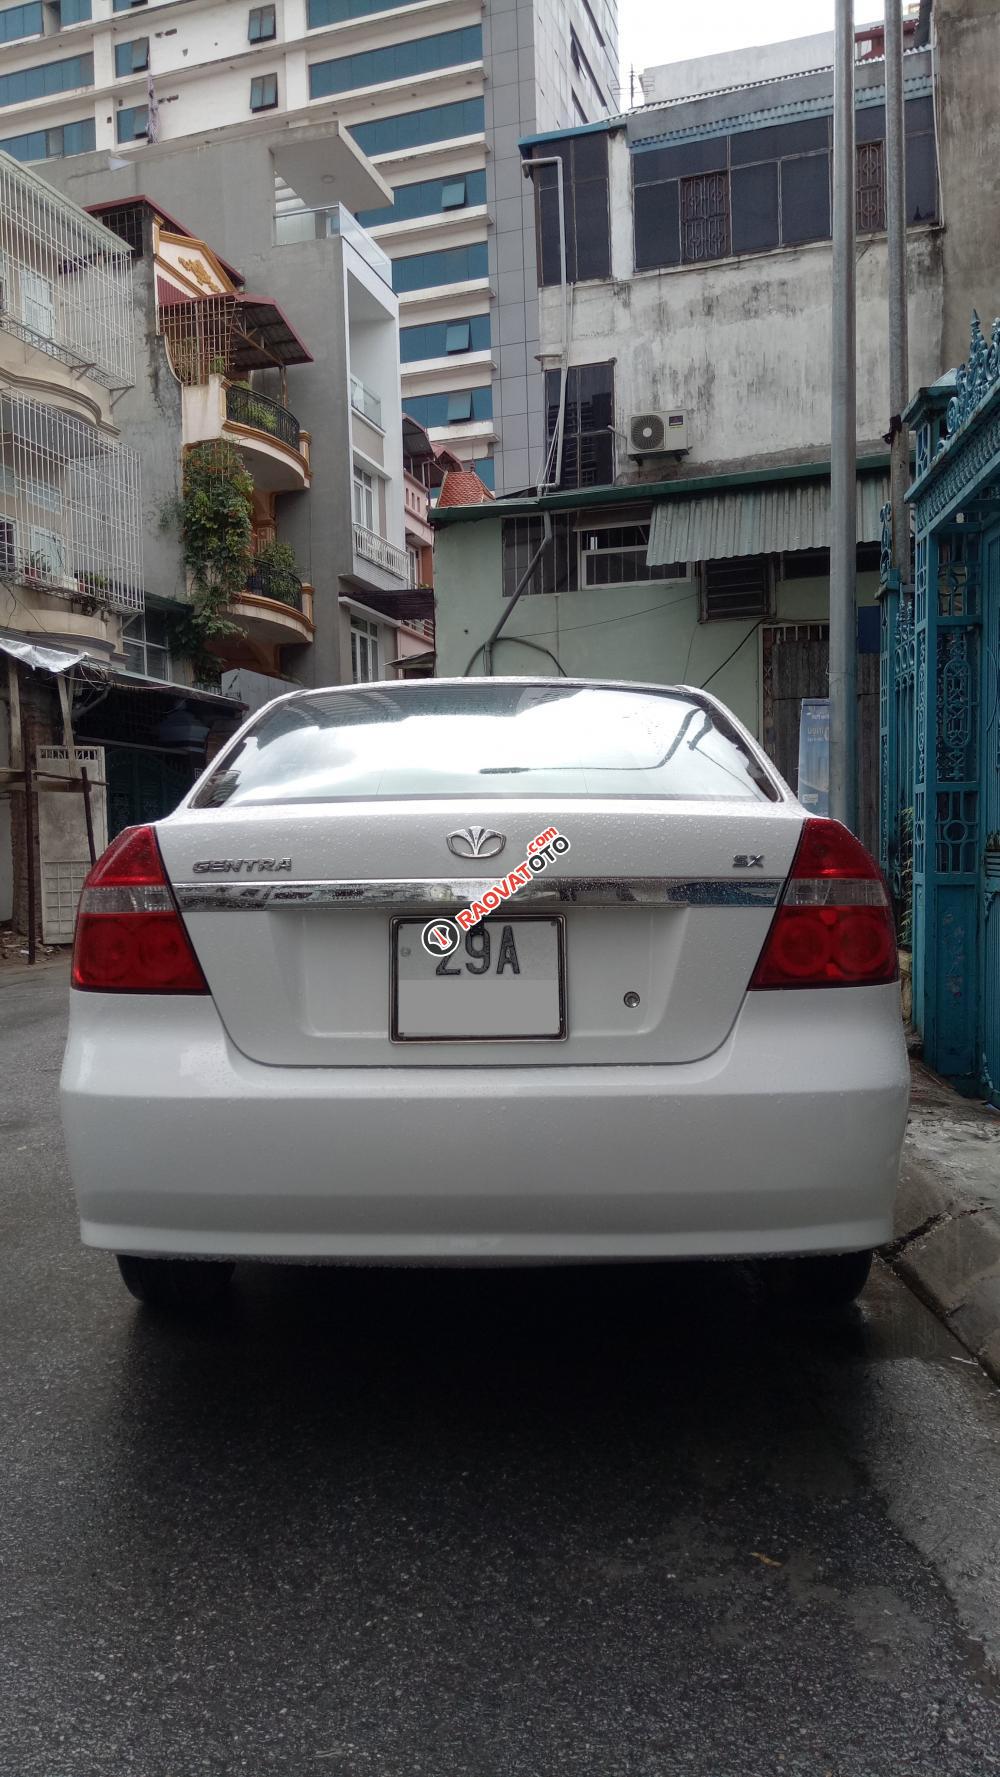 Bán xe Daewoo Gentra 1.5 SX 2011 màu trắng. Xe tư nhân Hà Nội 29a-5